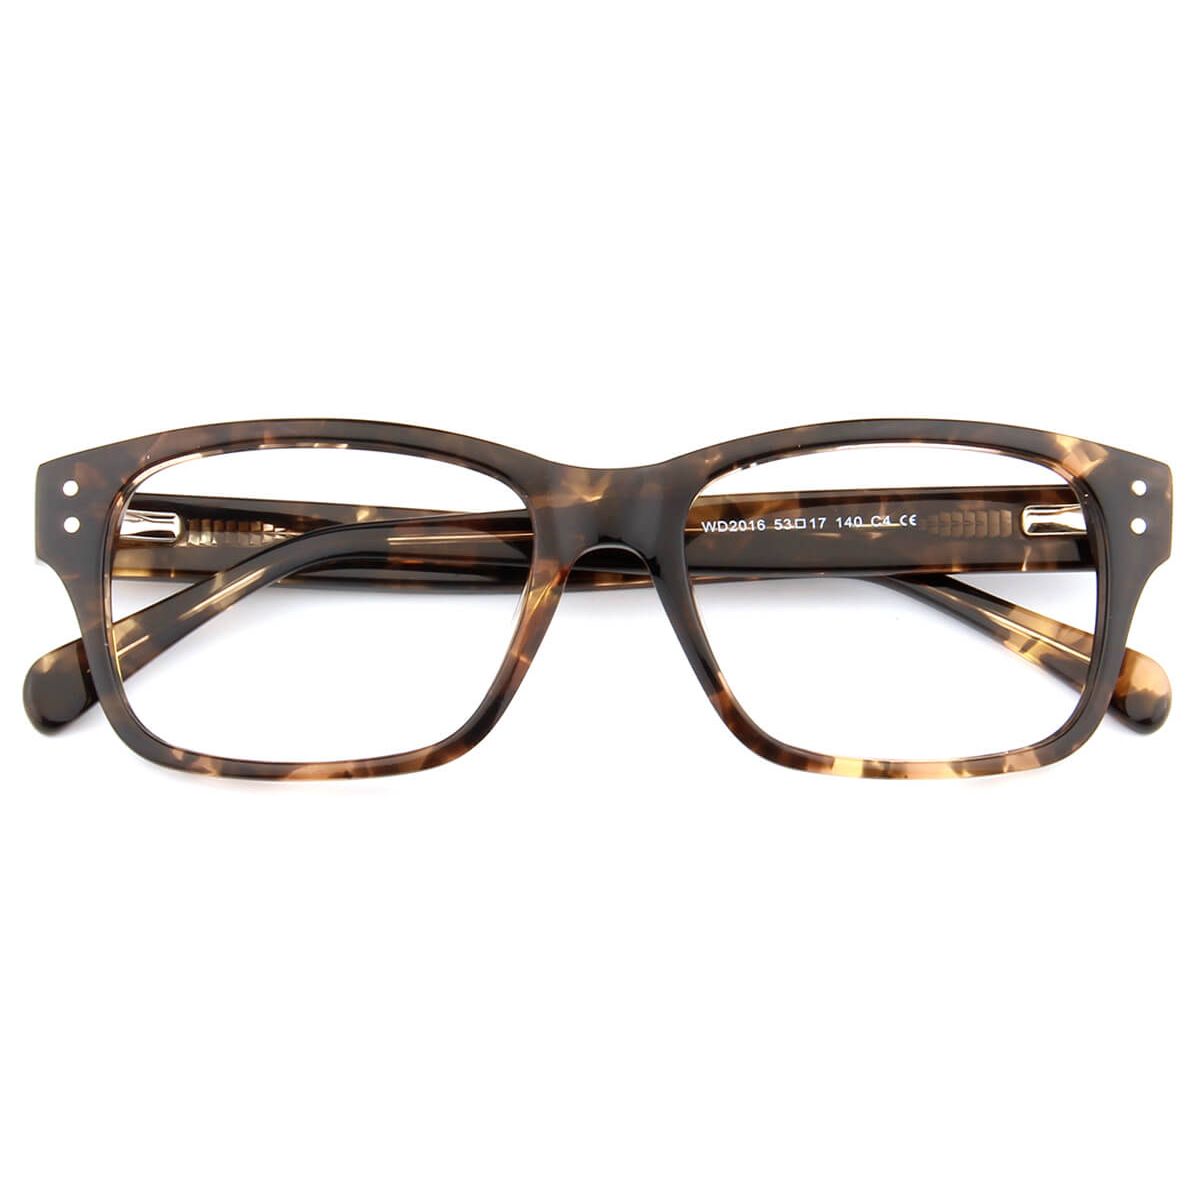 WD2016 Rectangle Floral Eyeglasses Frames | Leoptique